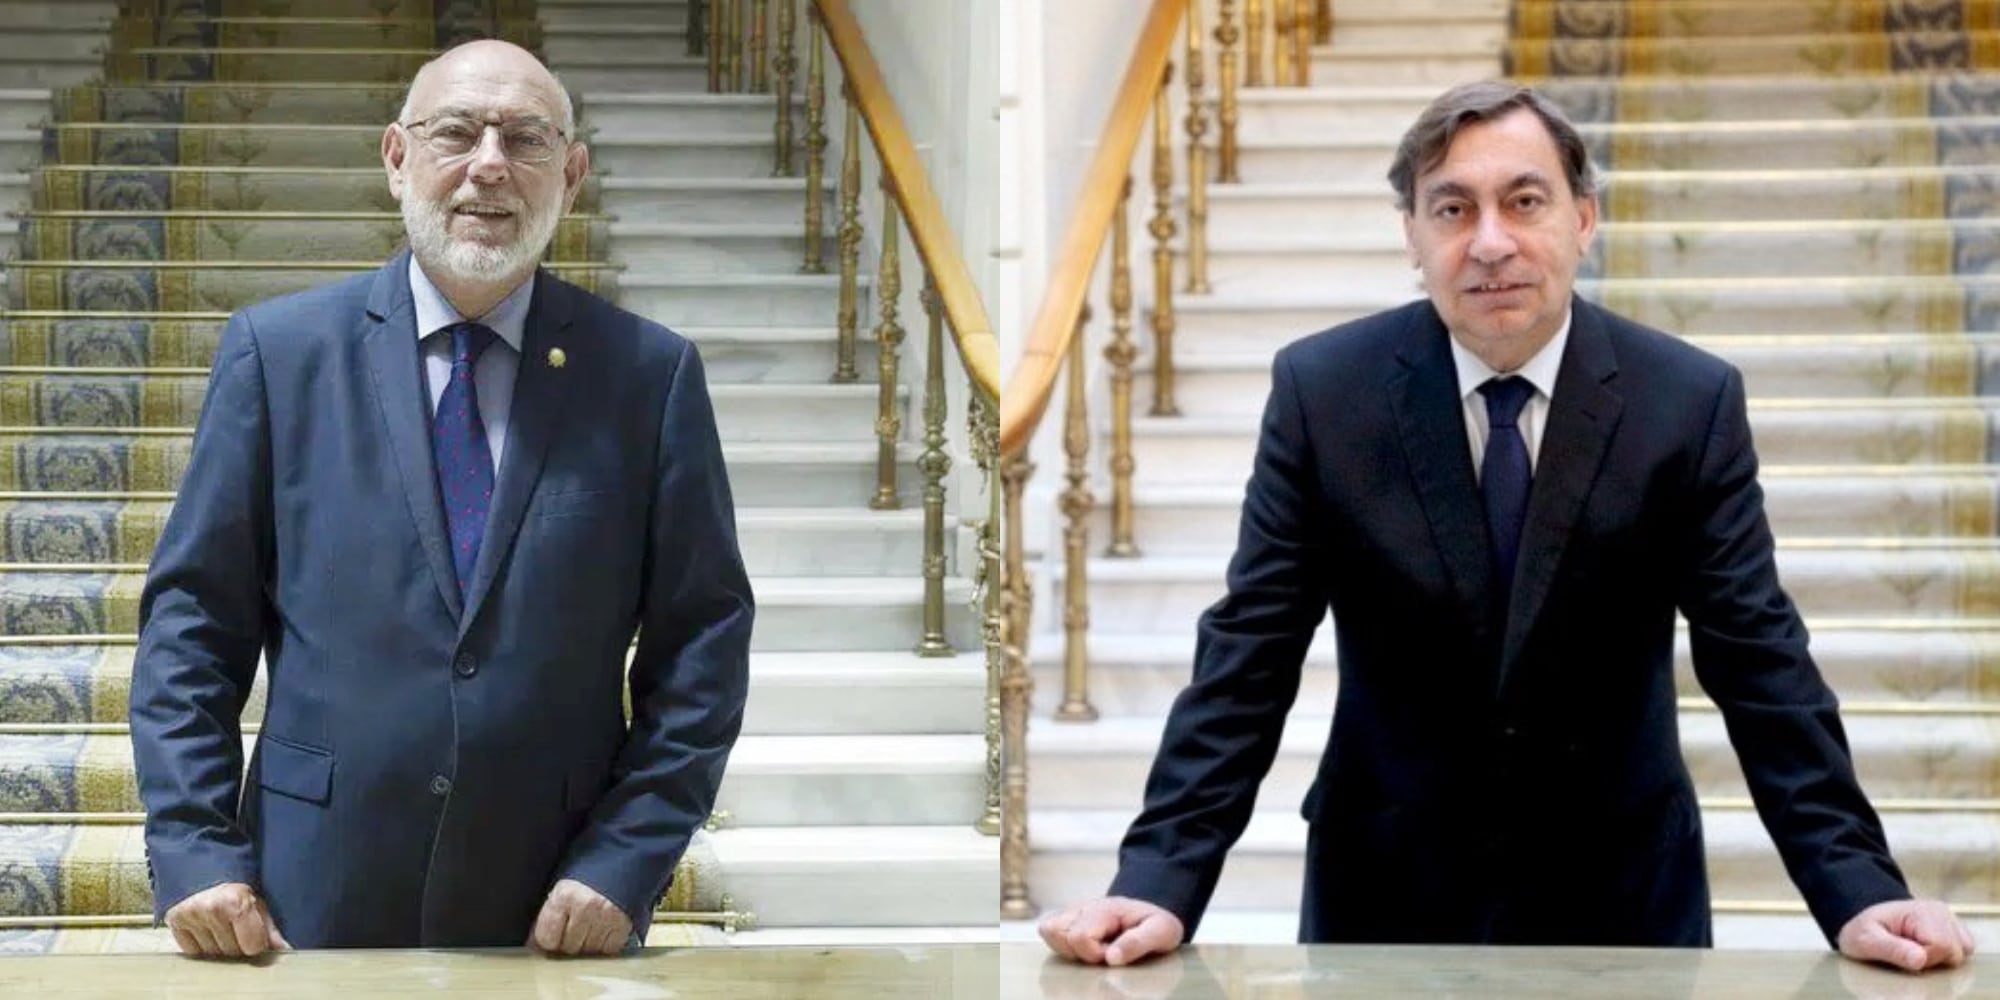 Maza y Sánchez Melgar, los fiscales generales que pusieron en marcha la maquinaria judicial para la detención y enjuiciamiento de Puigdemont 